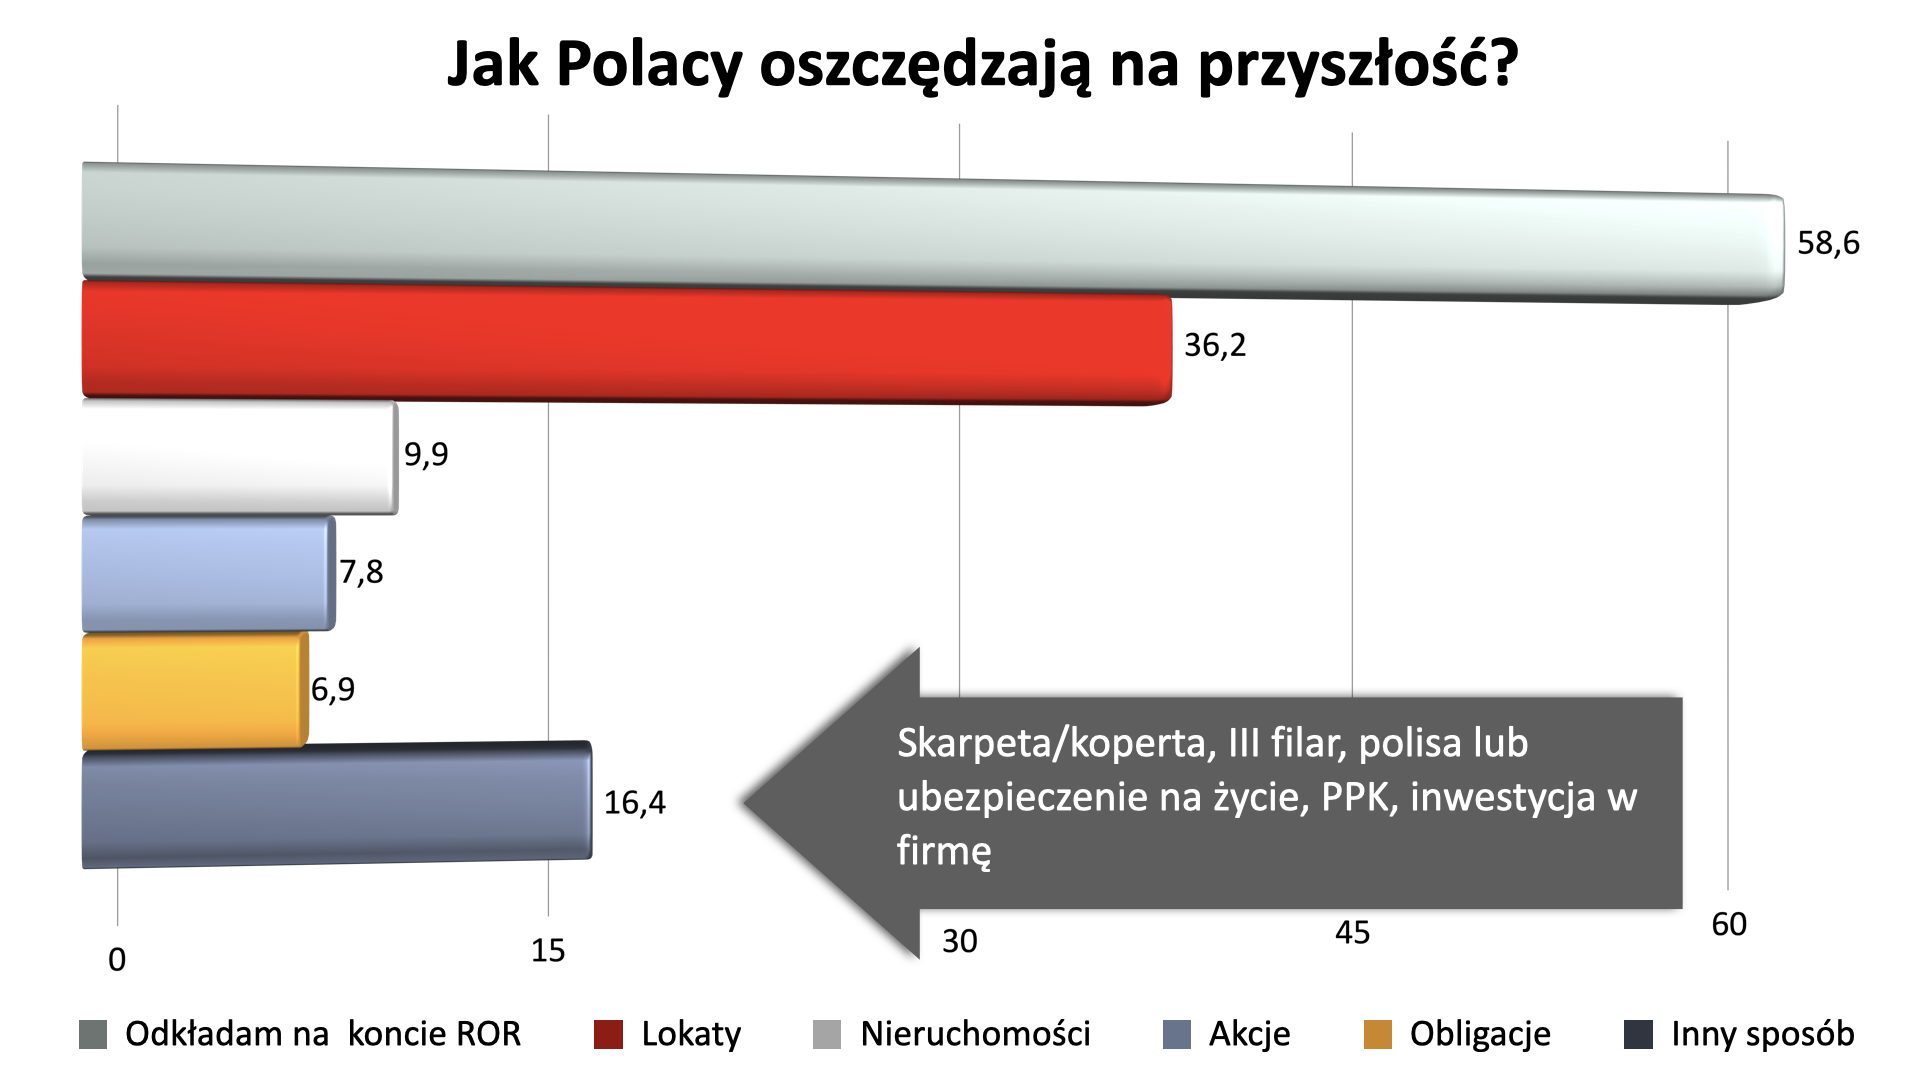 Zdjęcie artykułu Raport_PFR_Portal_PPK_Jak_oszczedzaja_Polacy